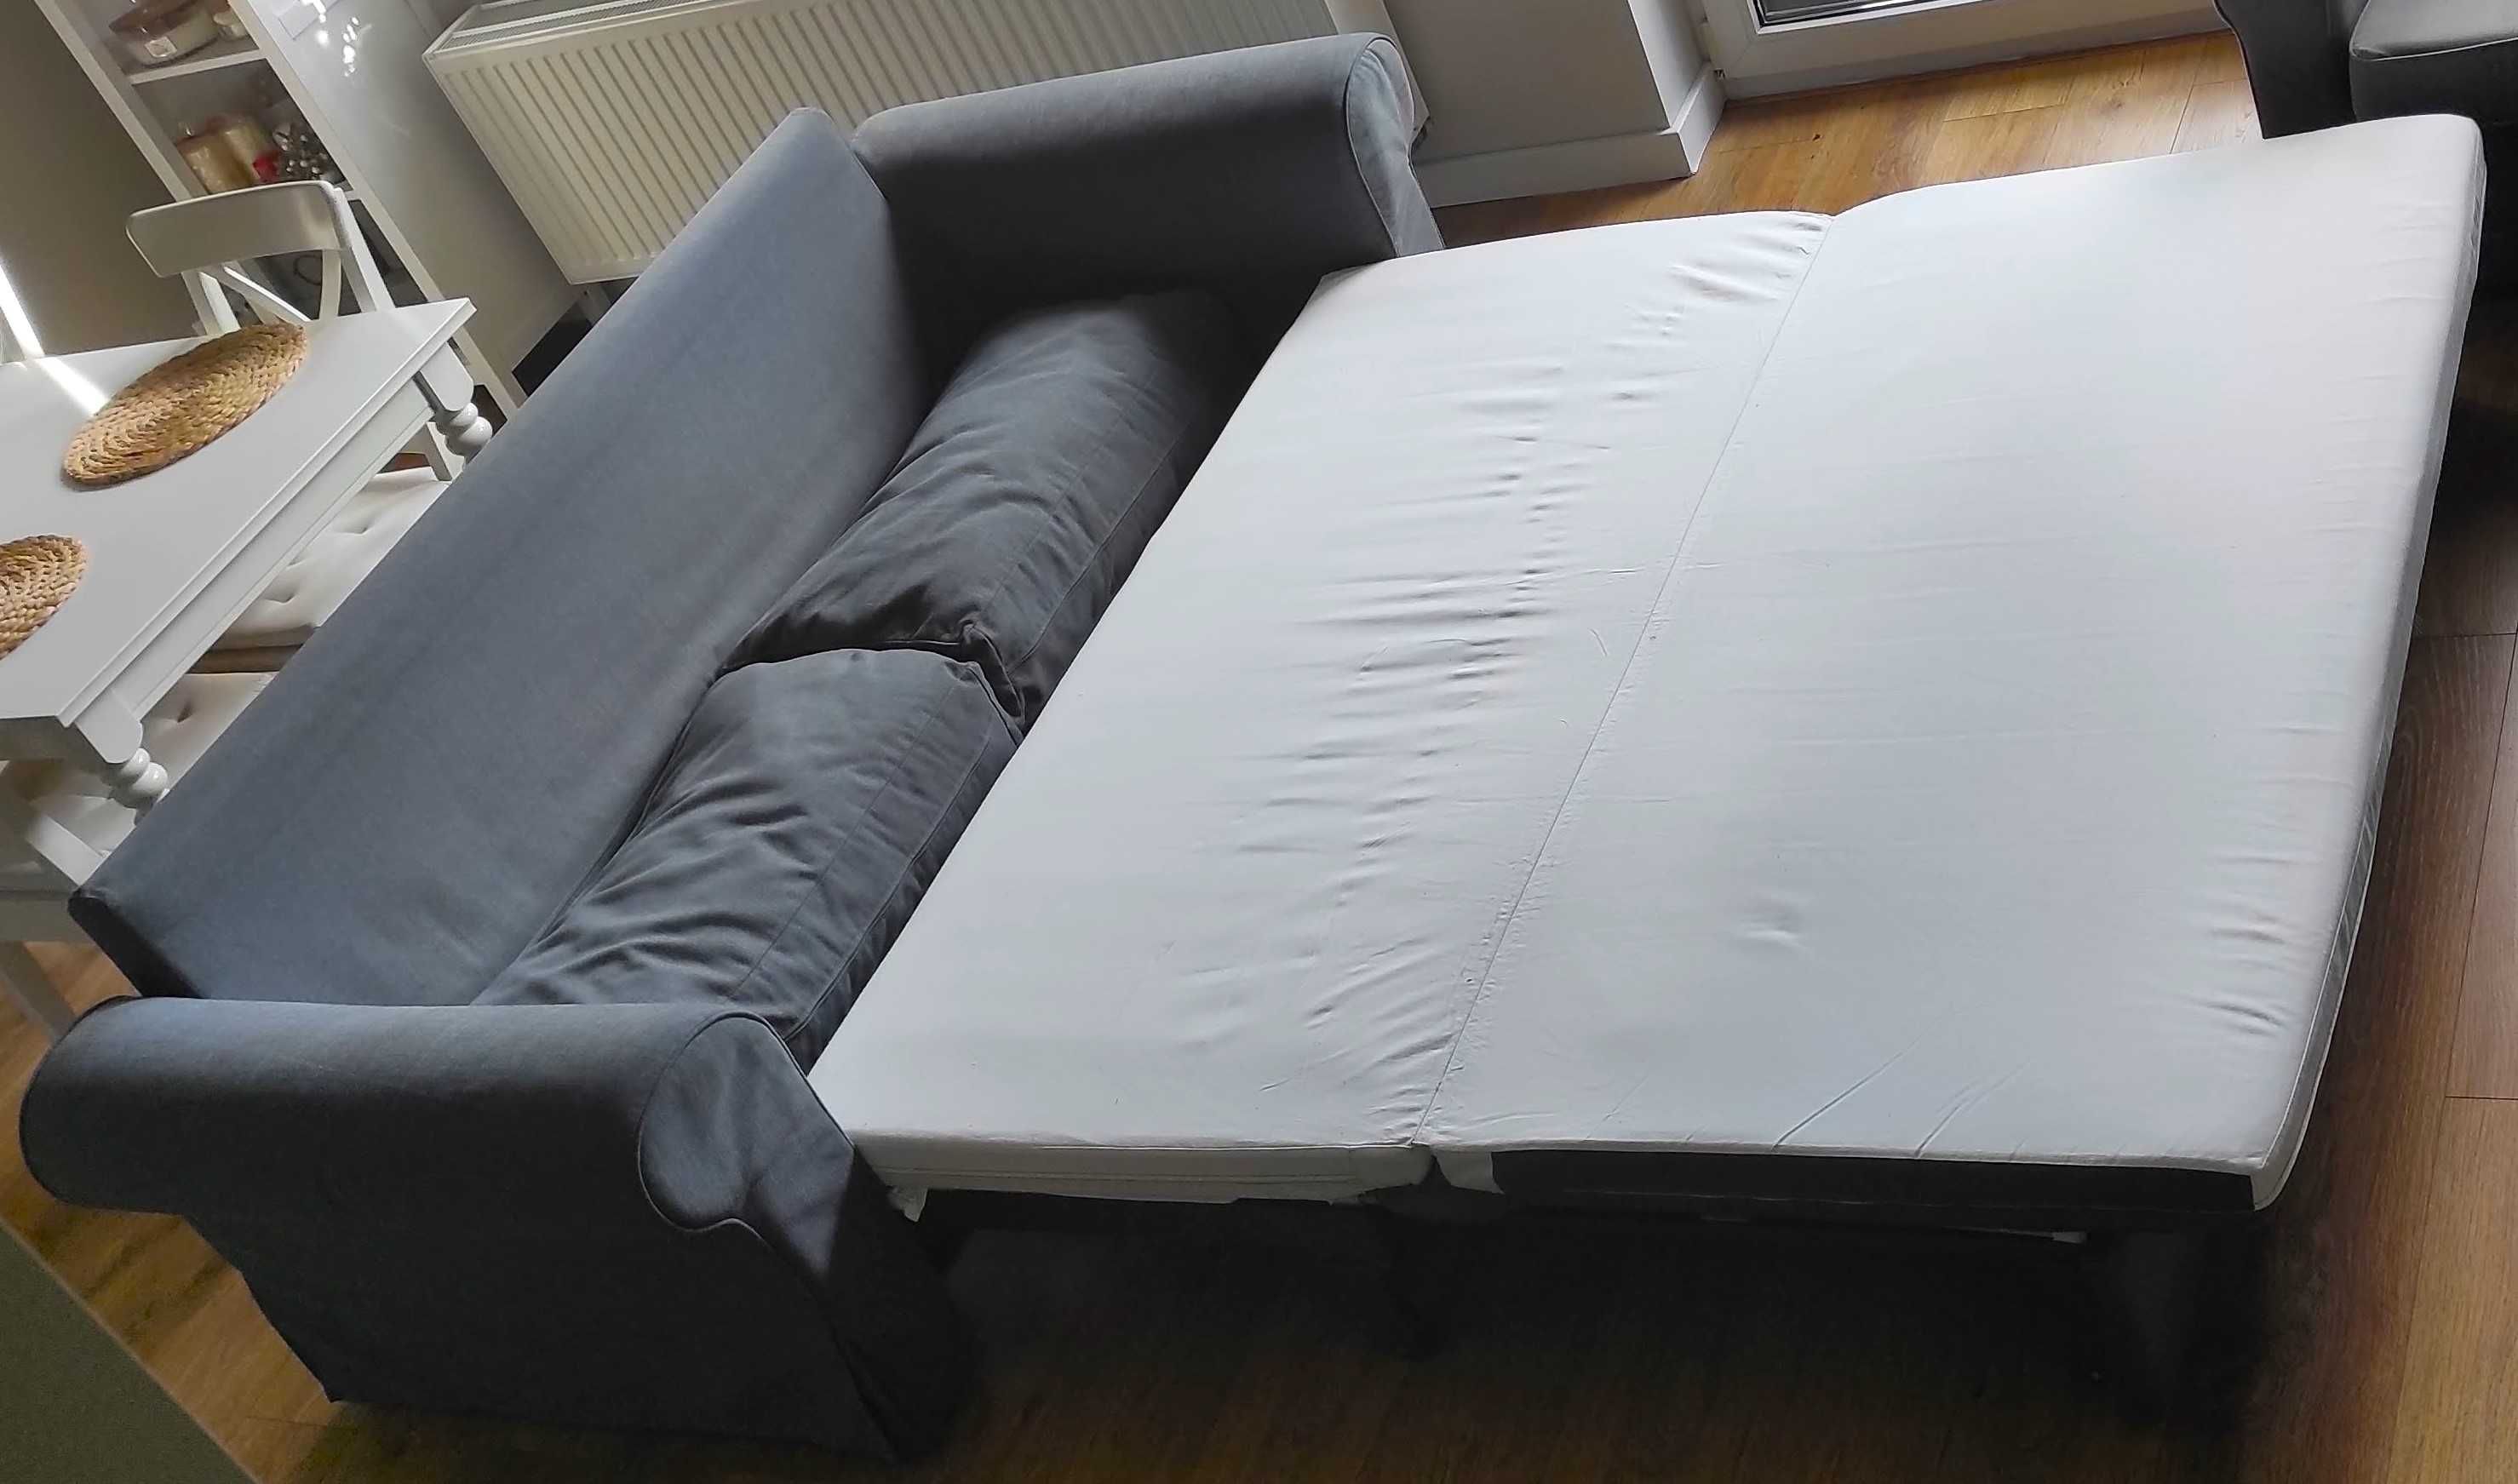 Sofa trzyosobowa rozkładana Ikea, idealna